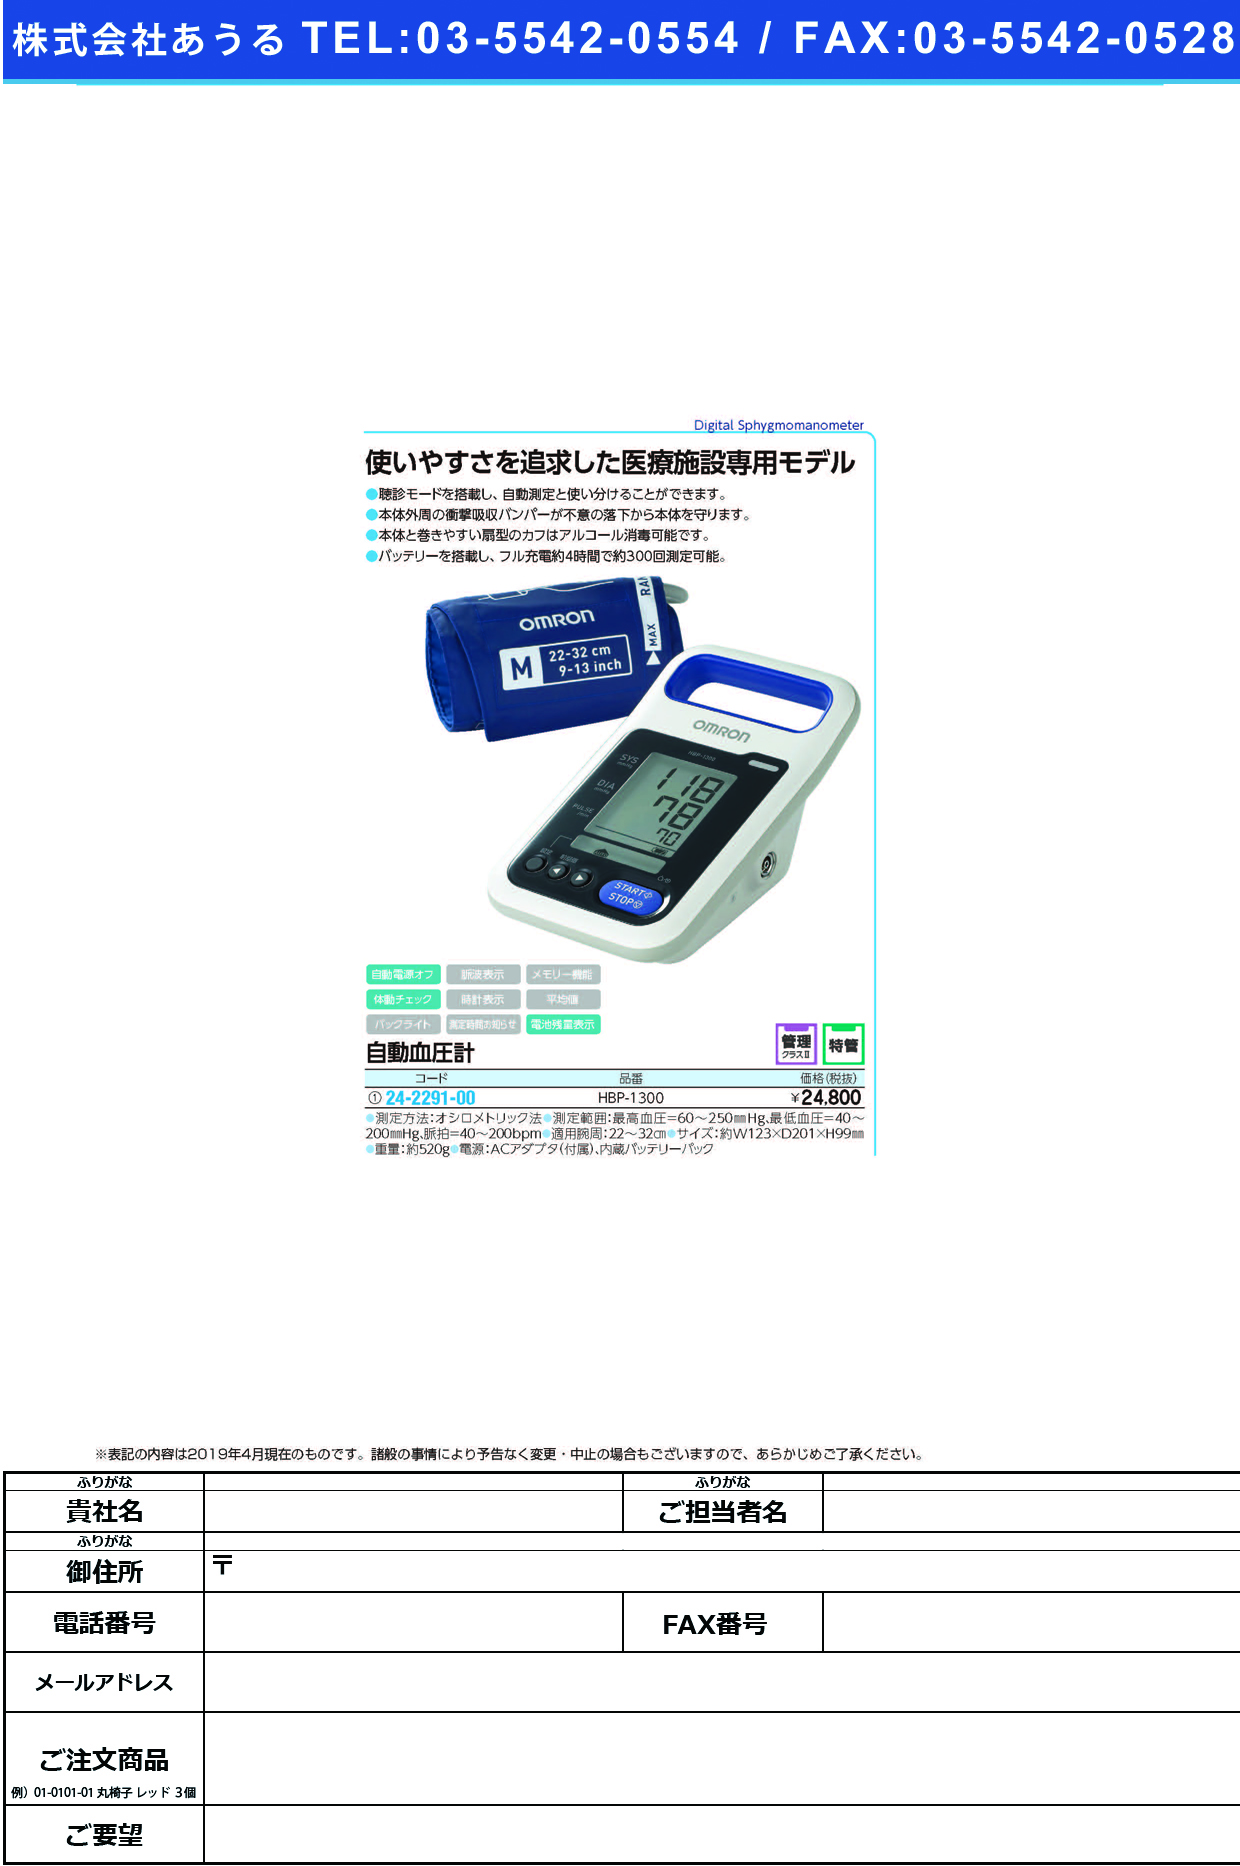 (24-2291-00)医用自動血圧計 HBP-1300 ｲﾖｳｼﾞﾄﾞｳｹﾂｱﾂｹｲ(フクダコーリン)【1台単位】【2019年カタログ商品】